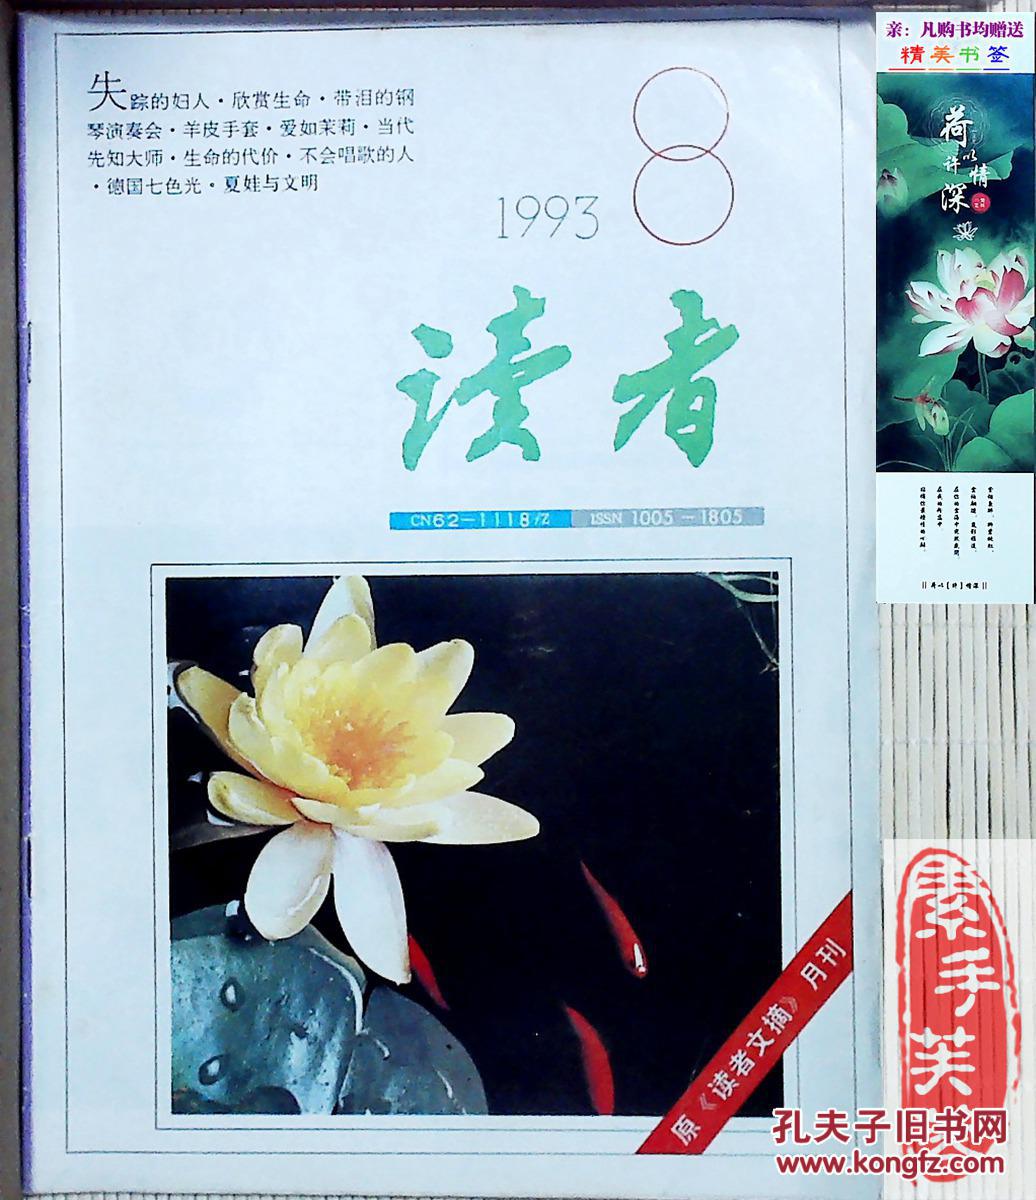 【图】《读者》杂志,1993年第8期--中国期刊第